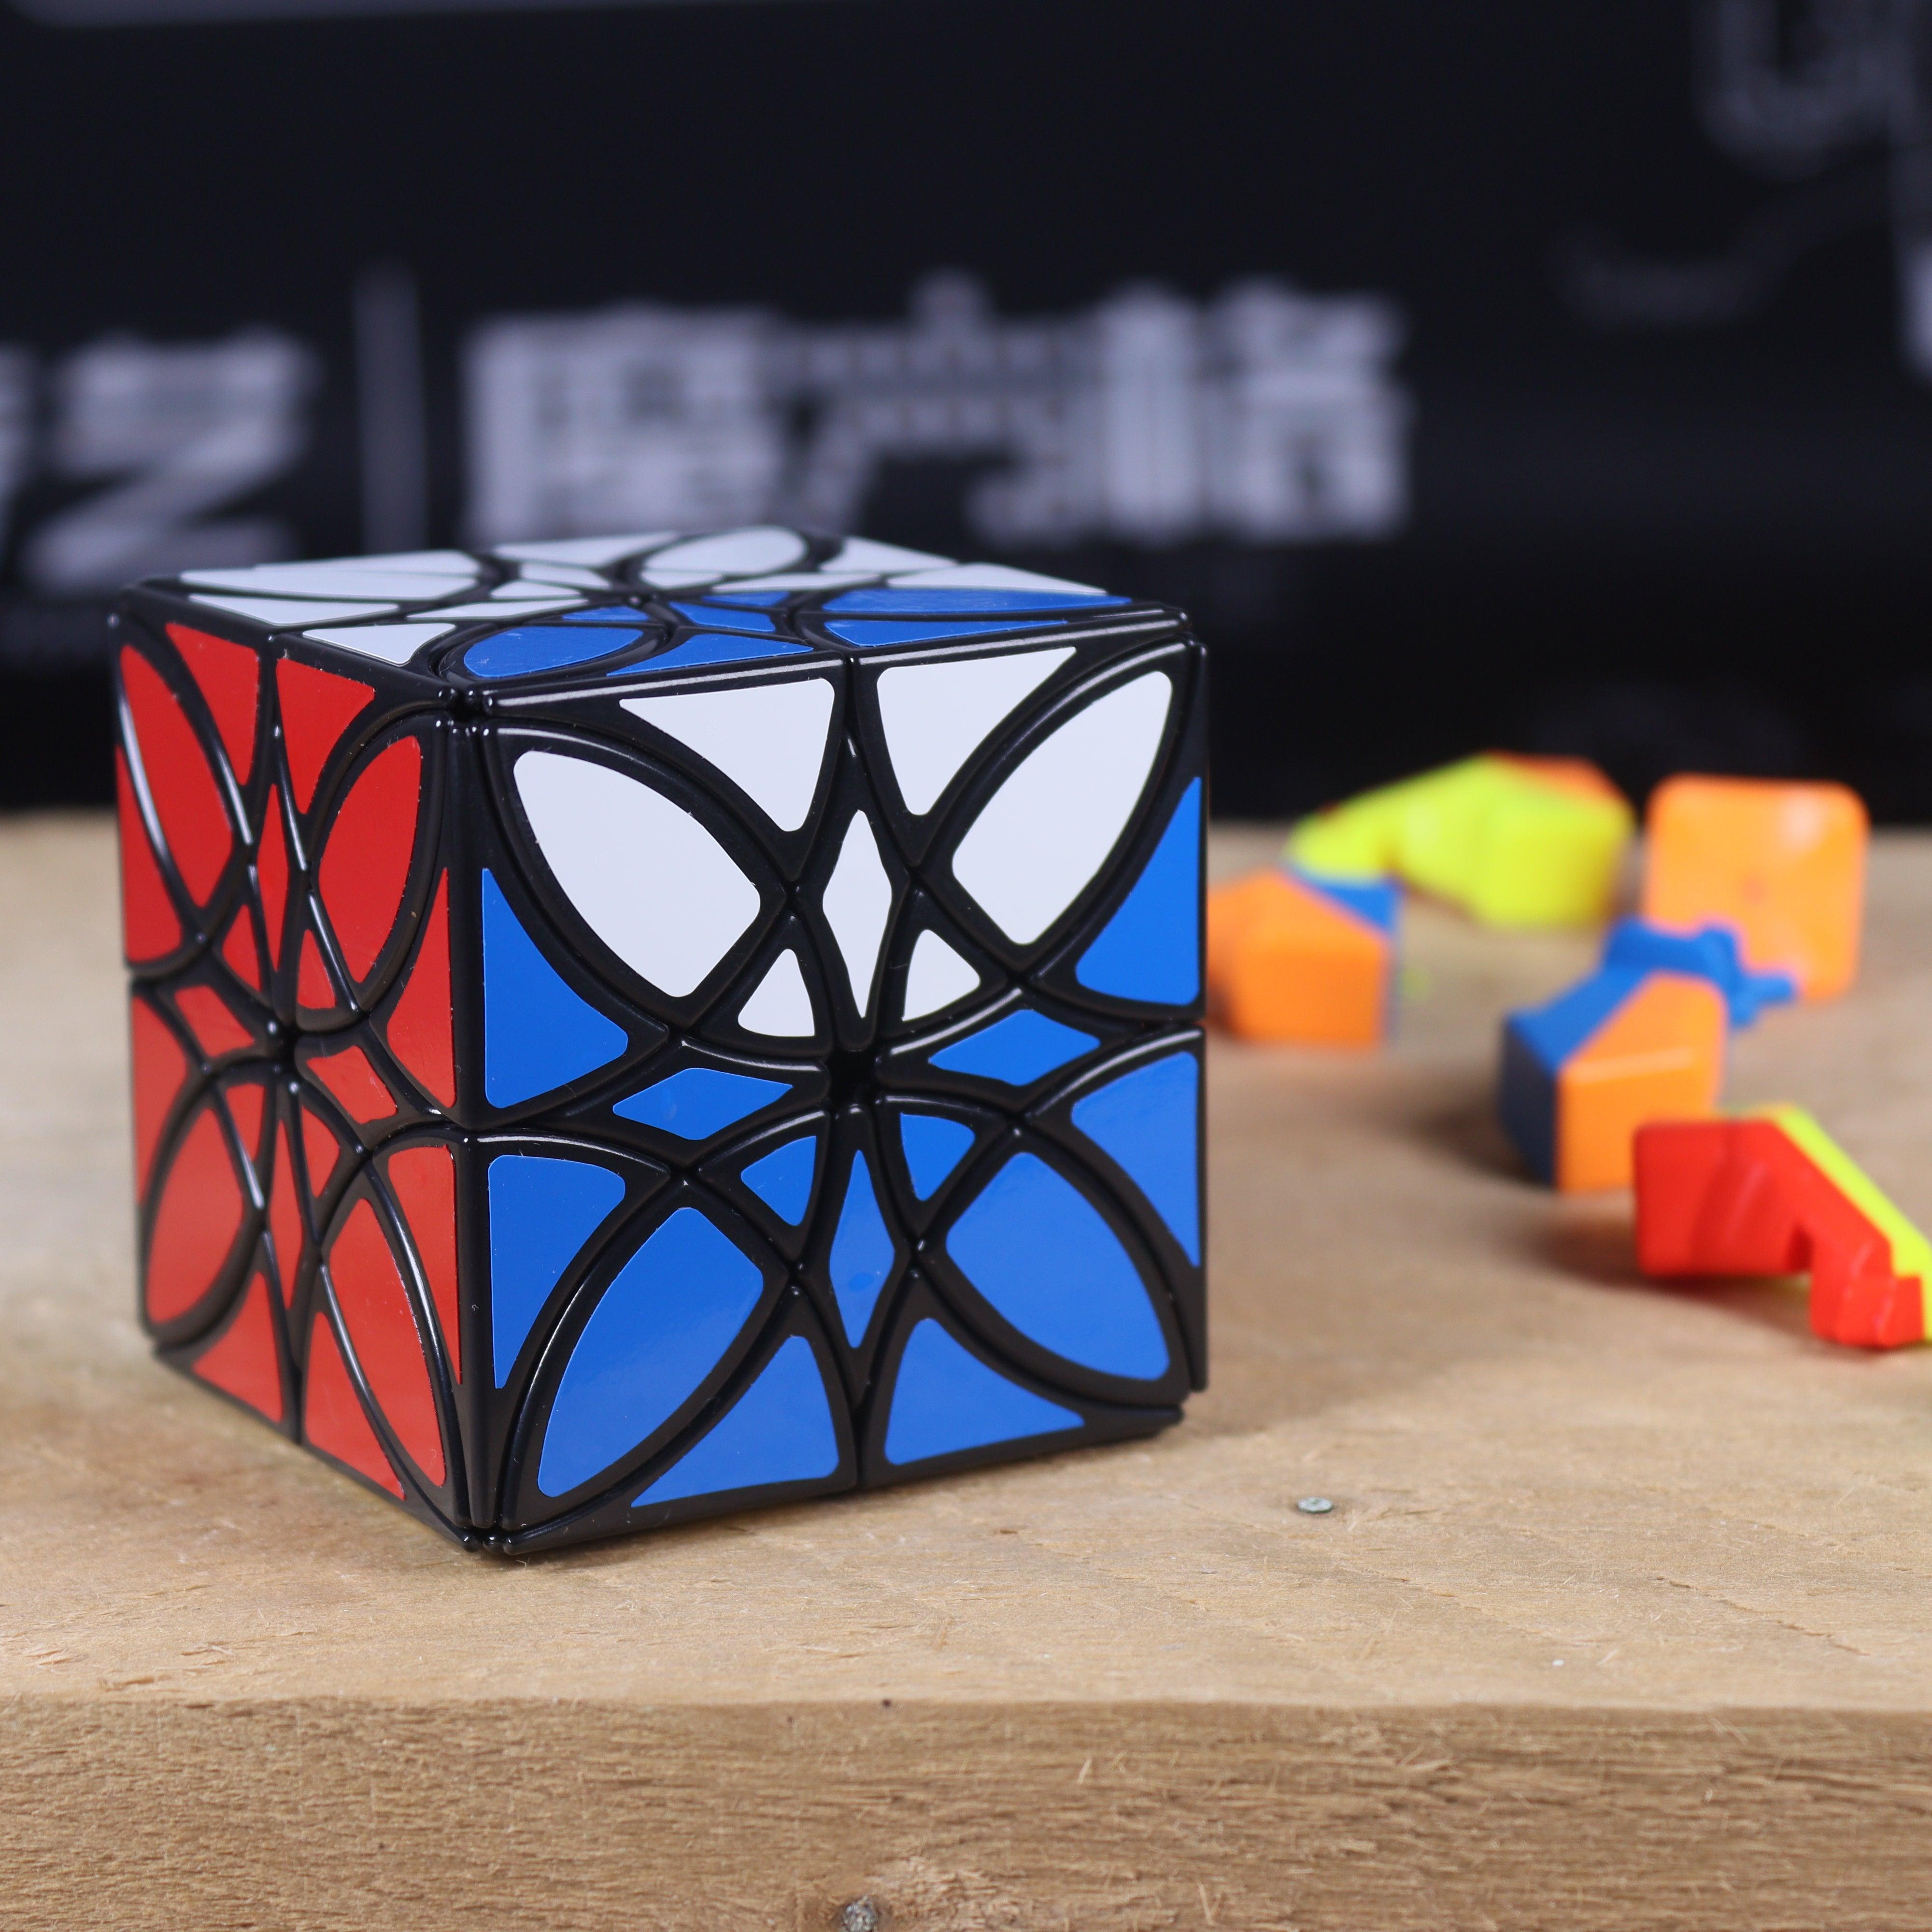 LanLan Butterflower Cube